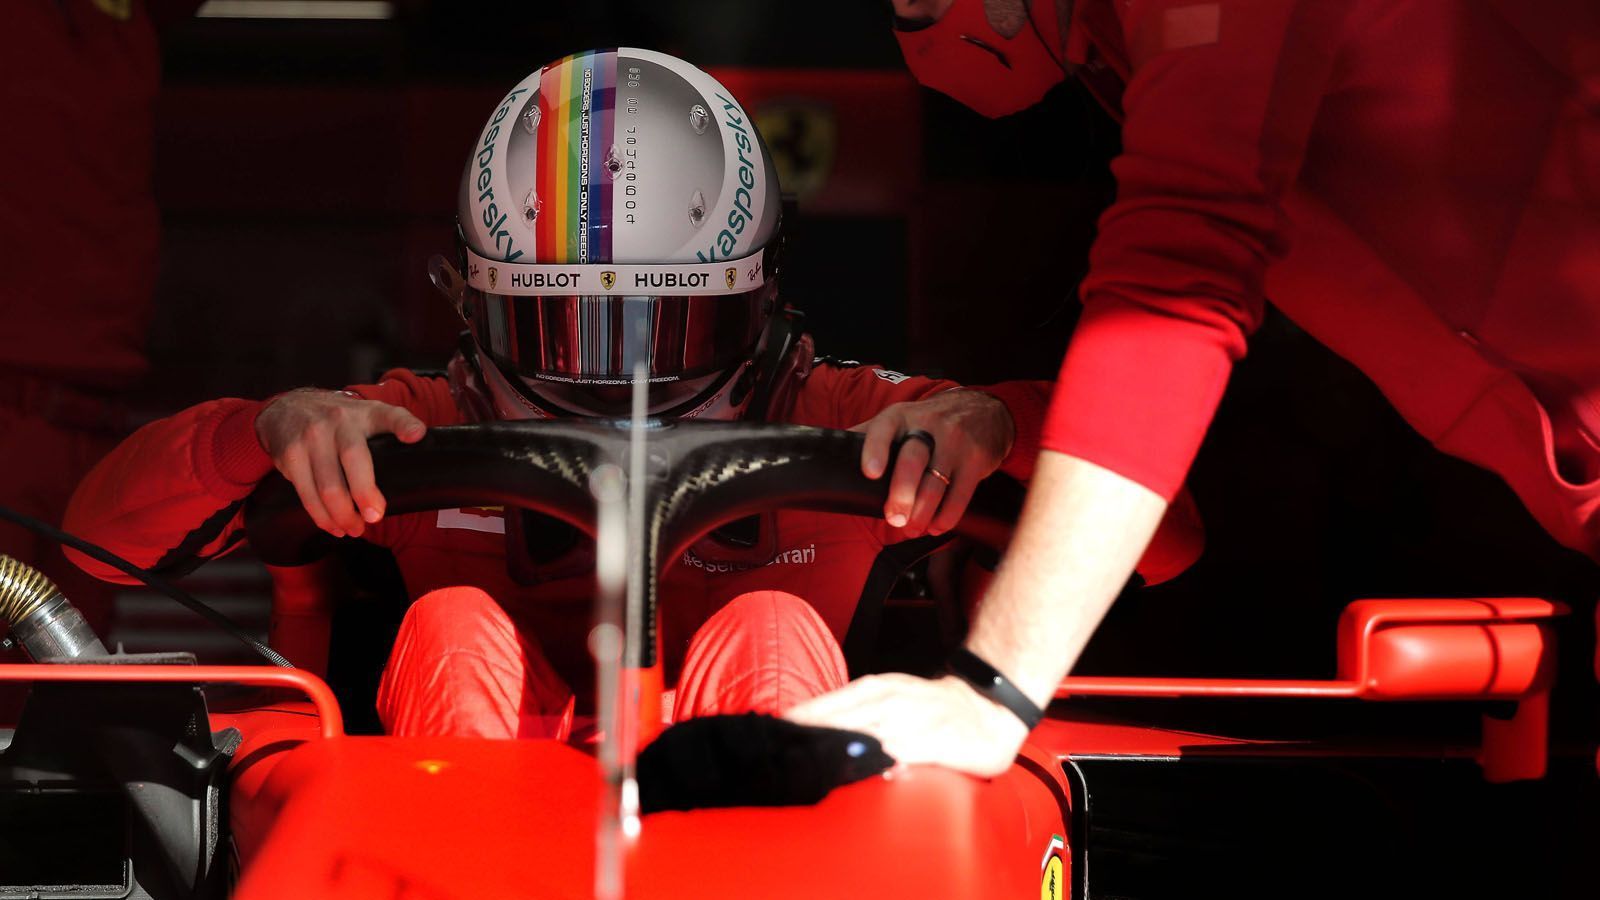 
                <strong>Sebastian Vettel fährt mit "Regenbogen-Helm"</strong><br>
                Ferrari-Pilot Sebastian Vettel geht beim Großen Preis der Türkei mit einem "Regenbogen-Helm" an den Start. Damit ehrt der viermalige Weltmeister die LGBT-Community und spricht sich für Diversität aus. Damit setzt der Deutsche ein deutliches Zeichen. 
              